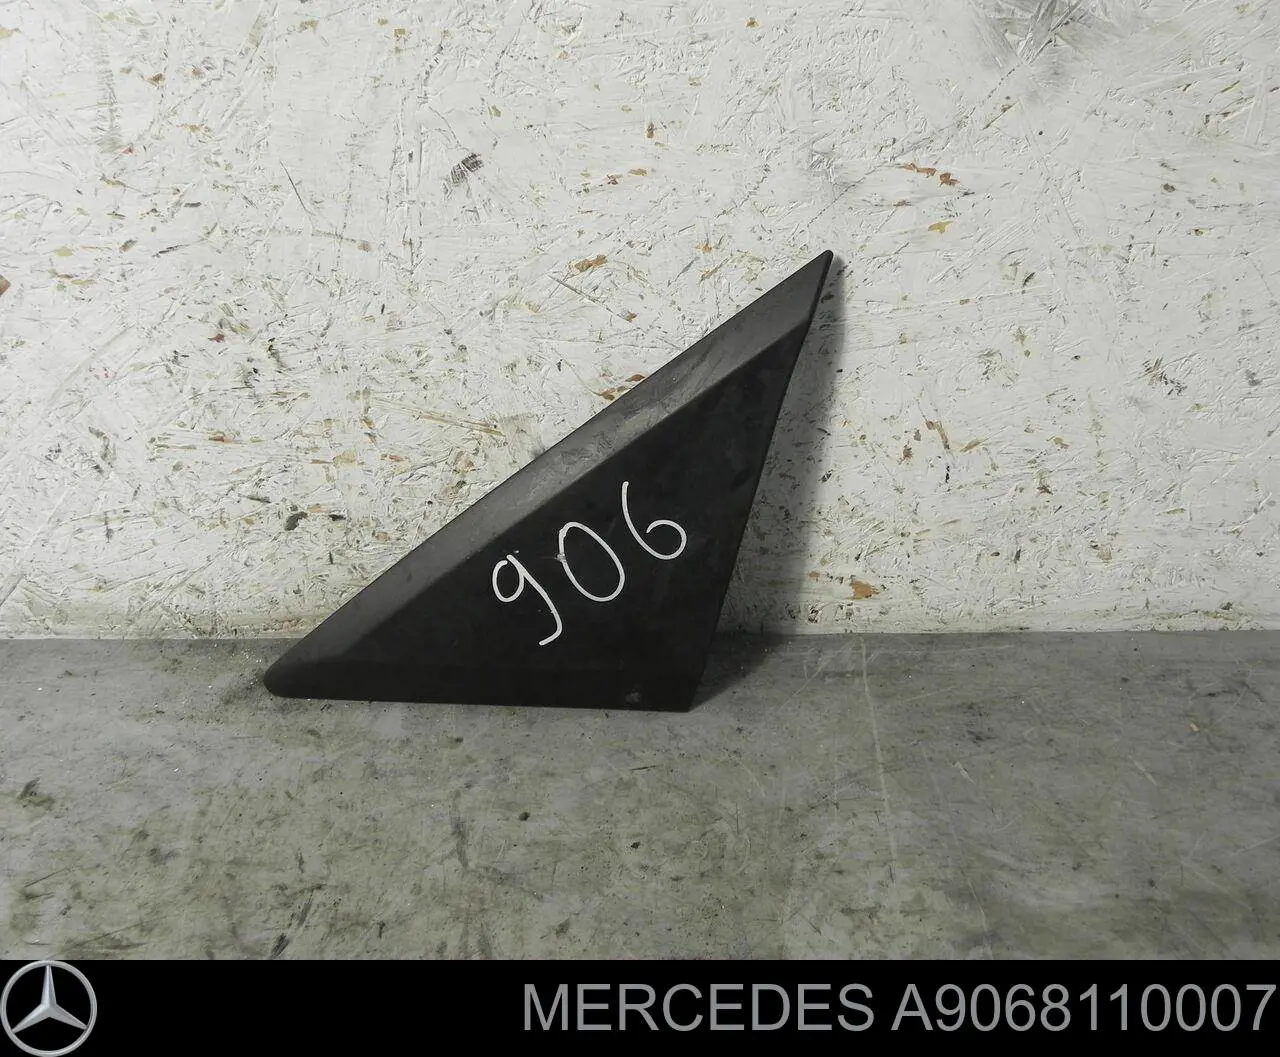 9068110007 Mercedes placa sobreposta (tampa do espelho de retrovisão esquerdo)